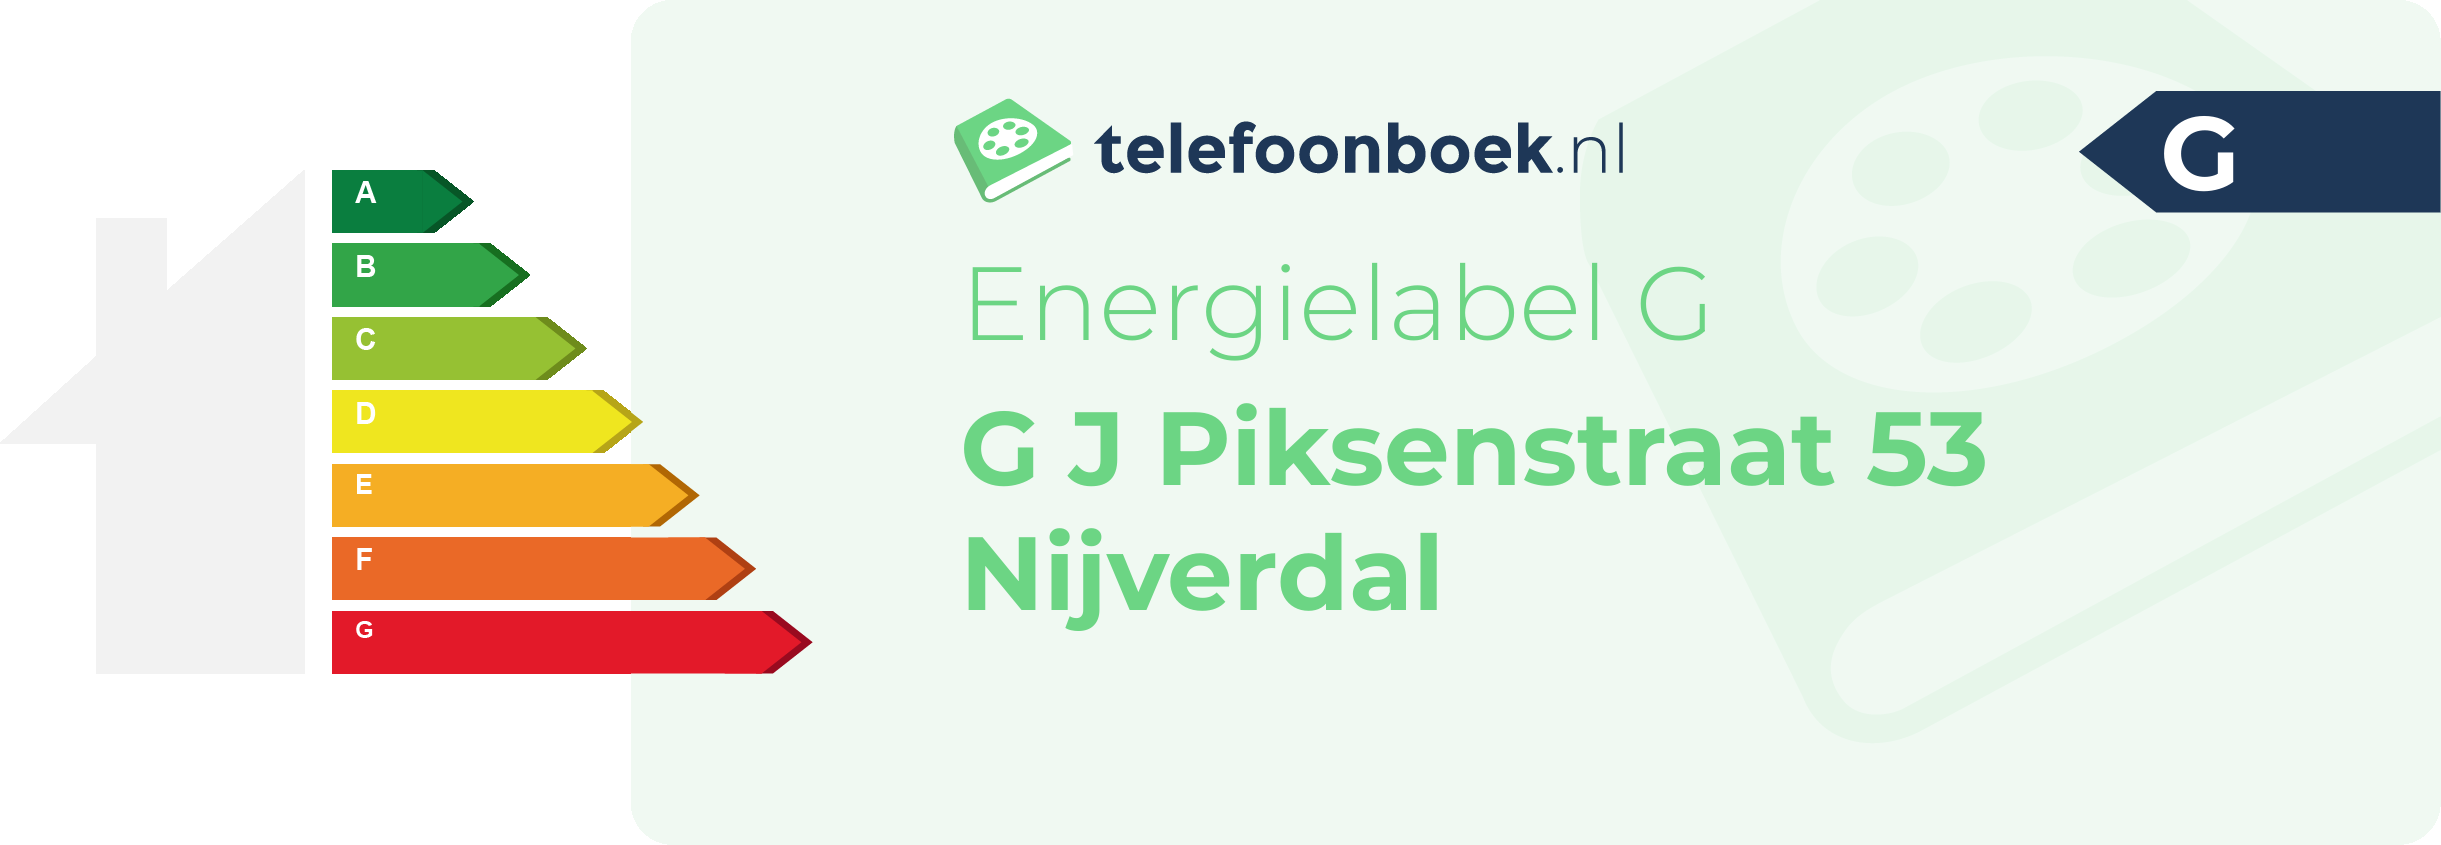 Energielabel G J Piksenstraat 53 Nijverdal